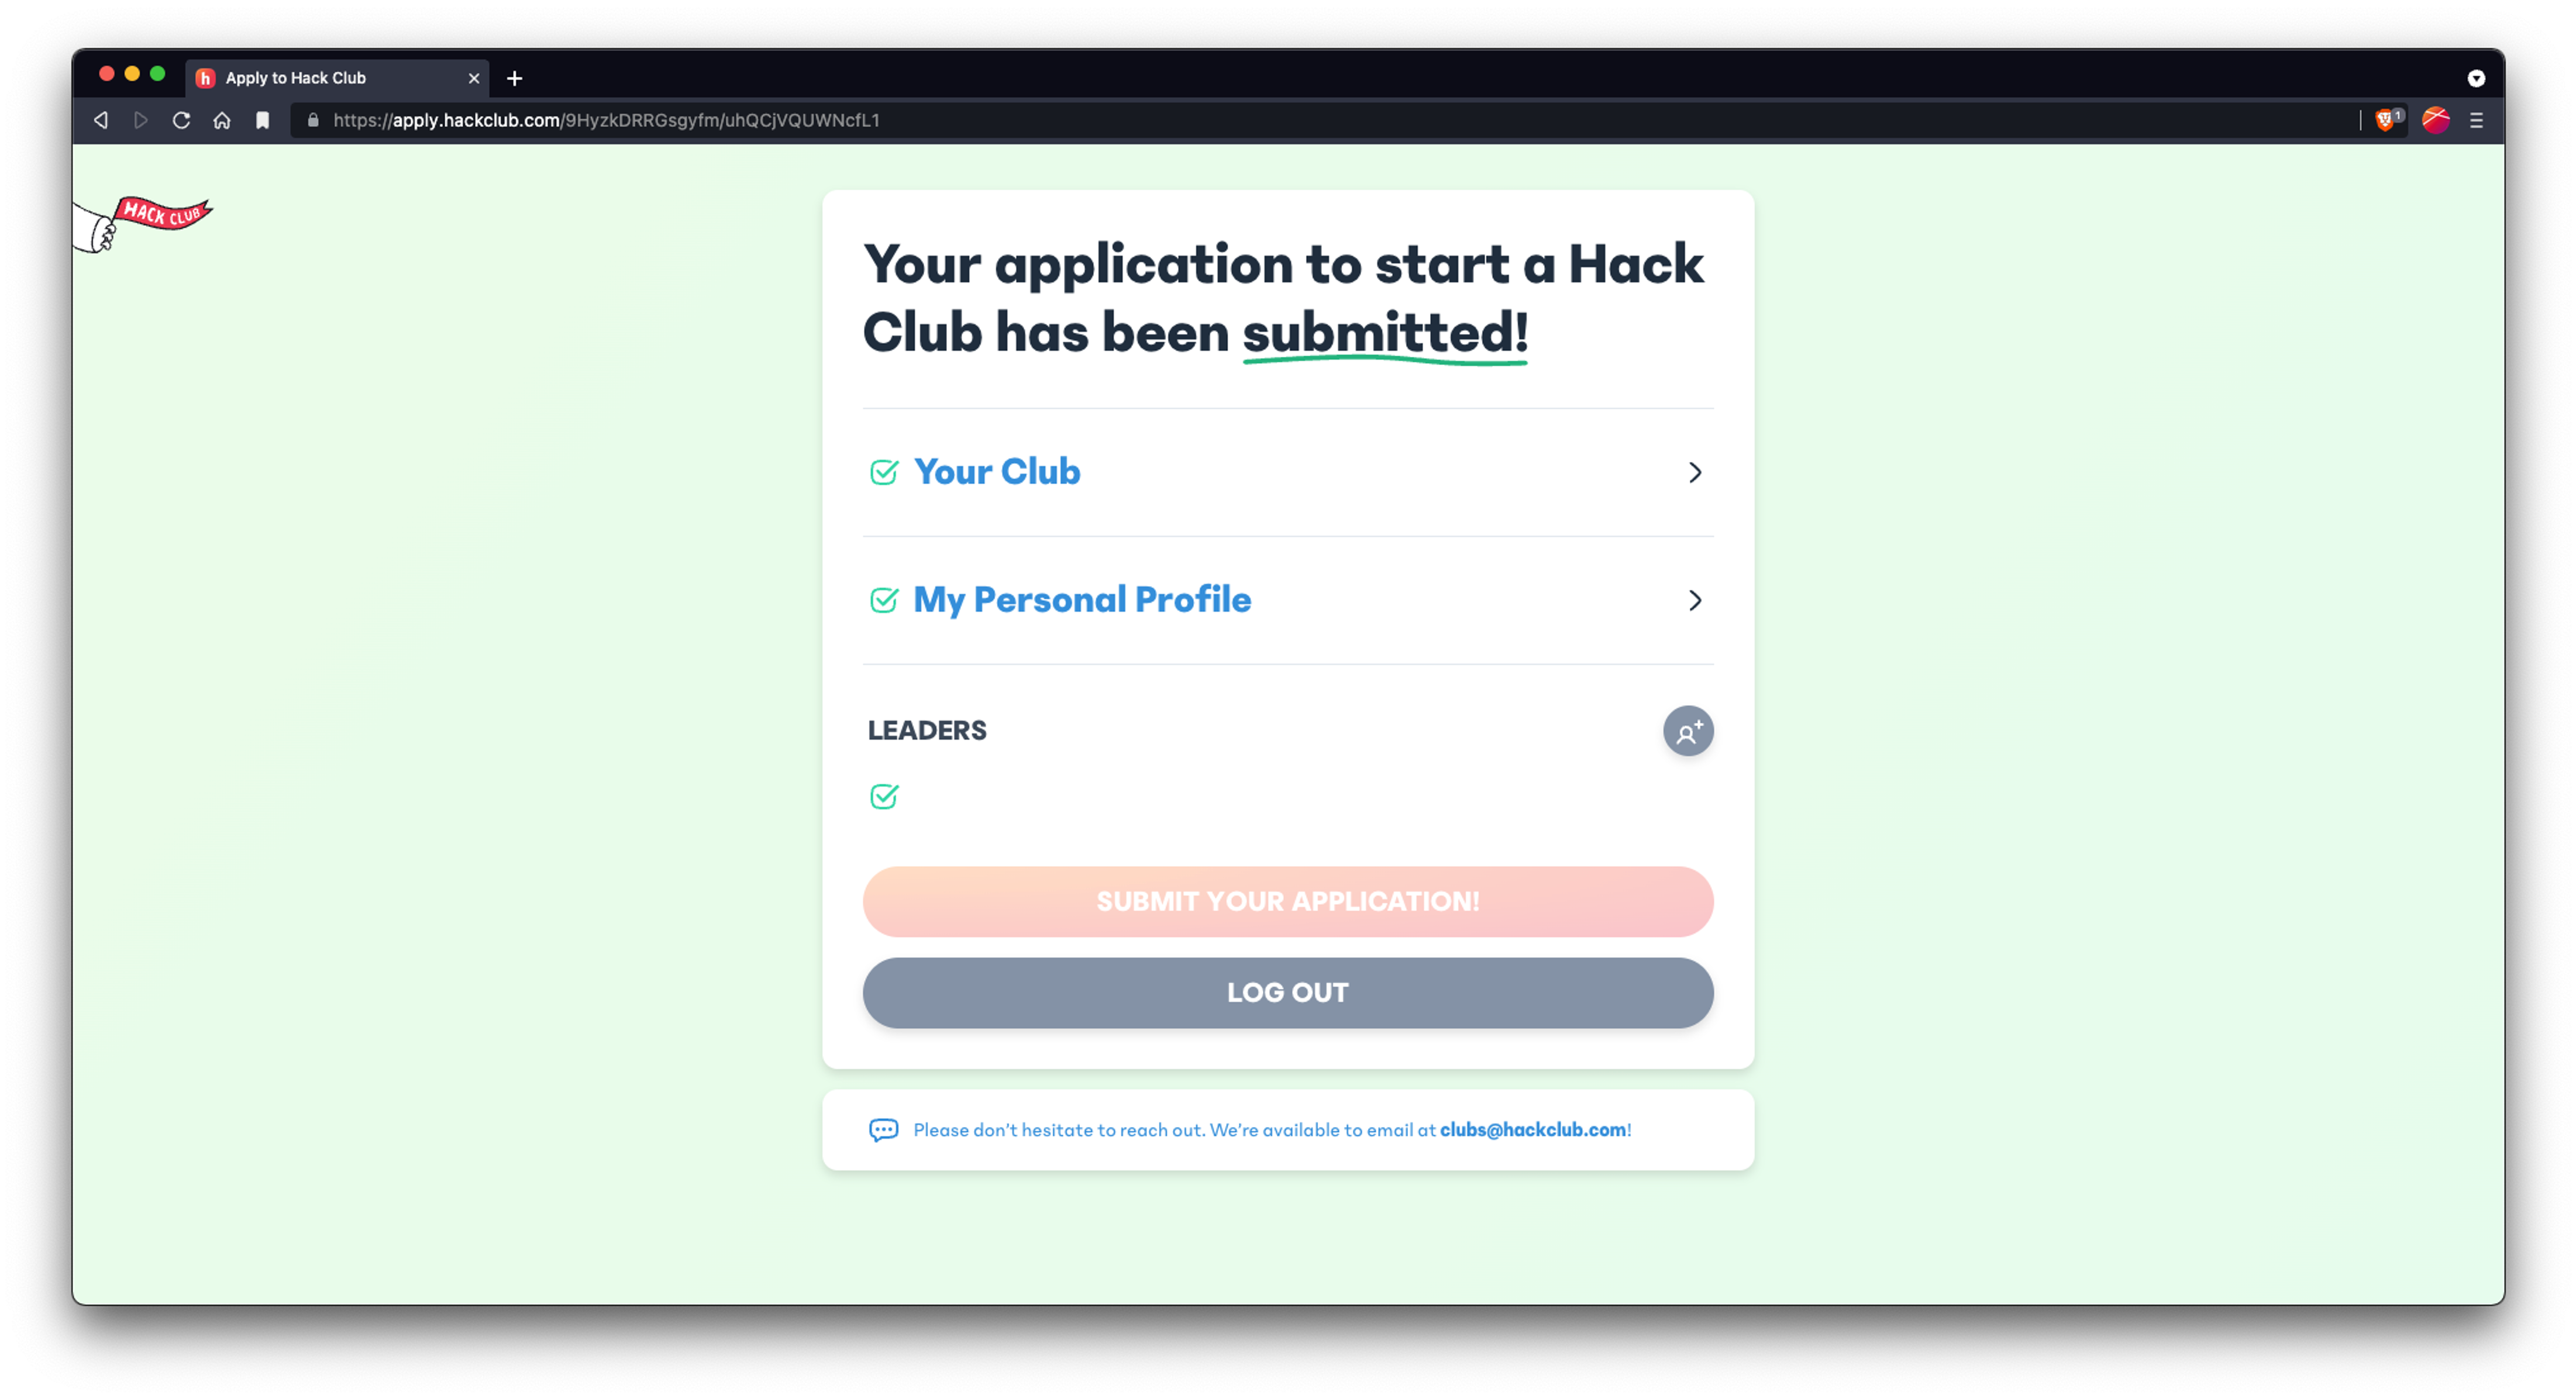 https://cloud-bgwaex5ij-hack-club-bot.vercel.app/0hack-club-app-submitted.png